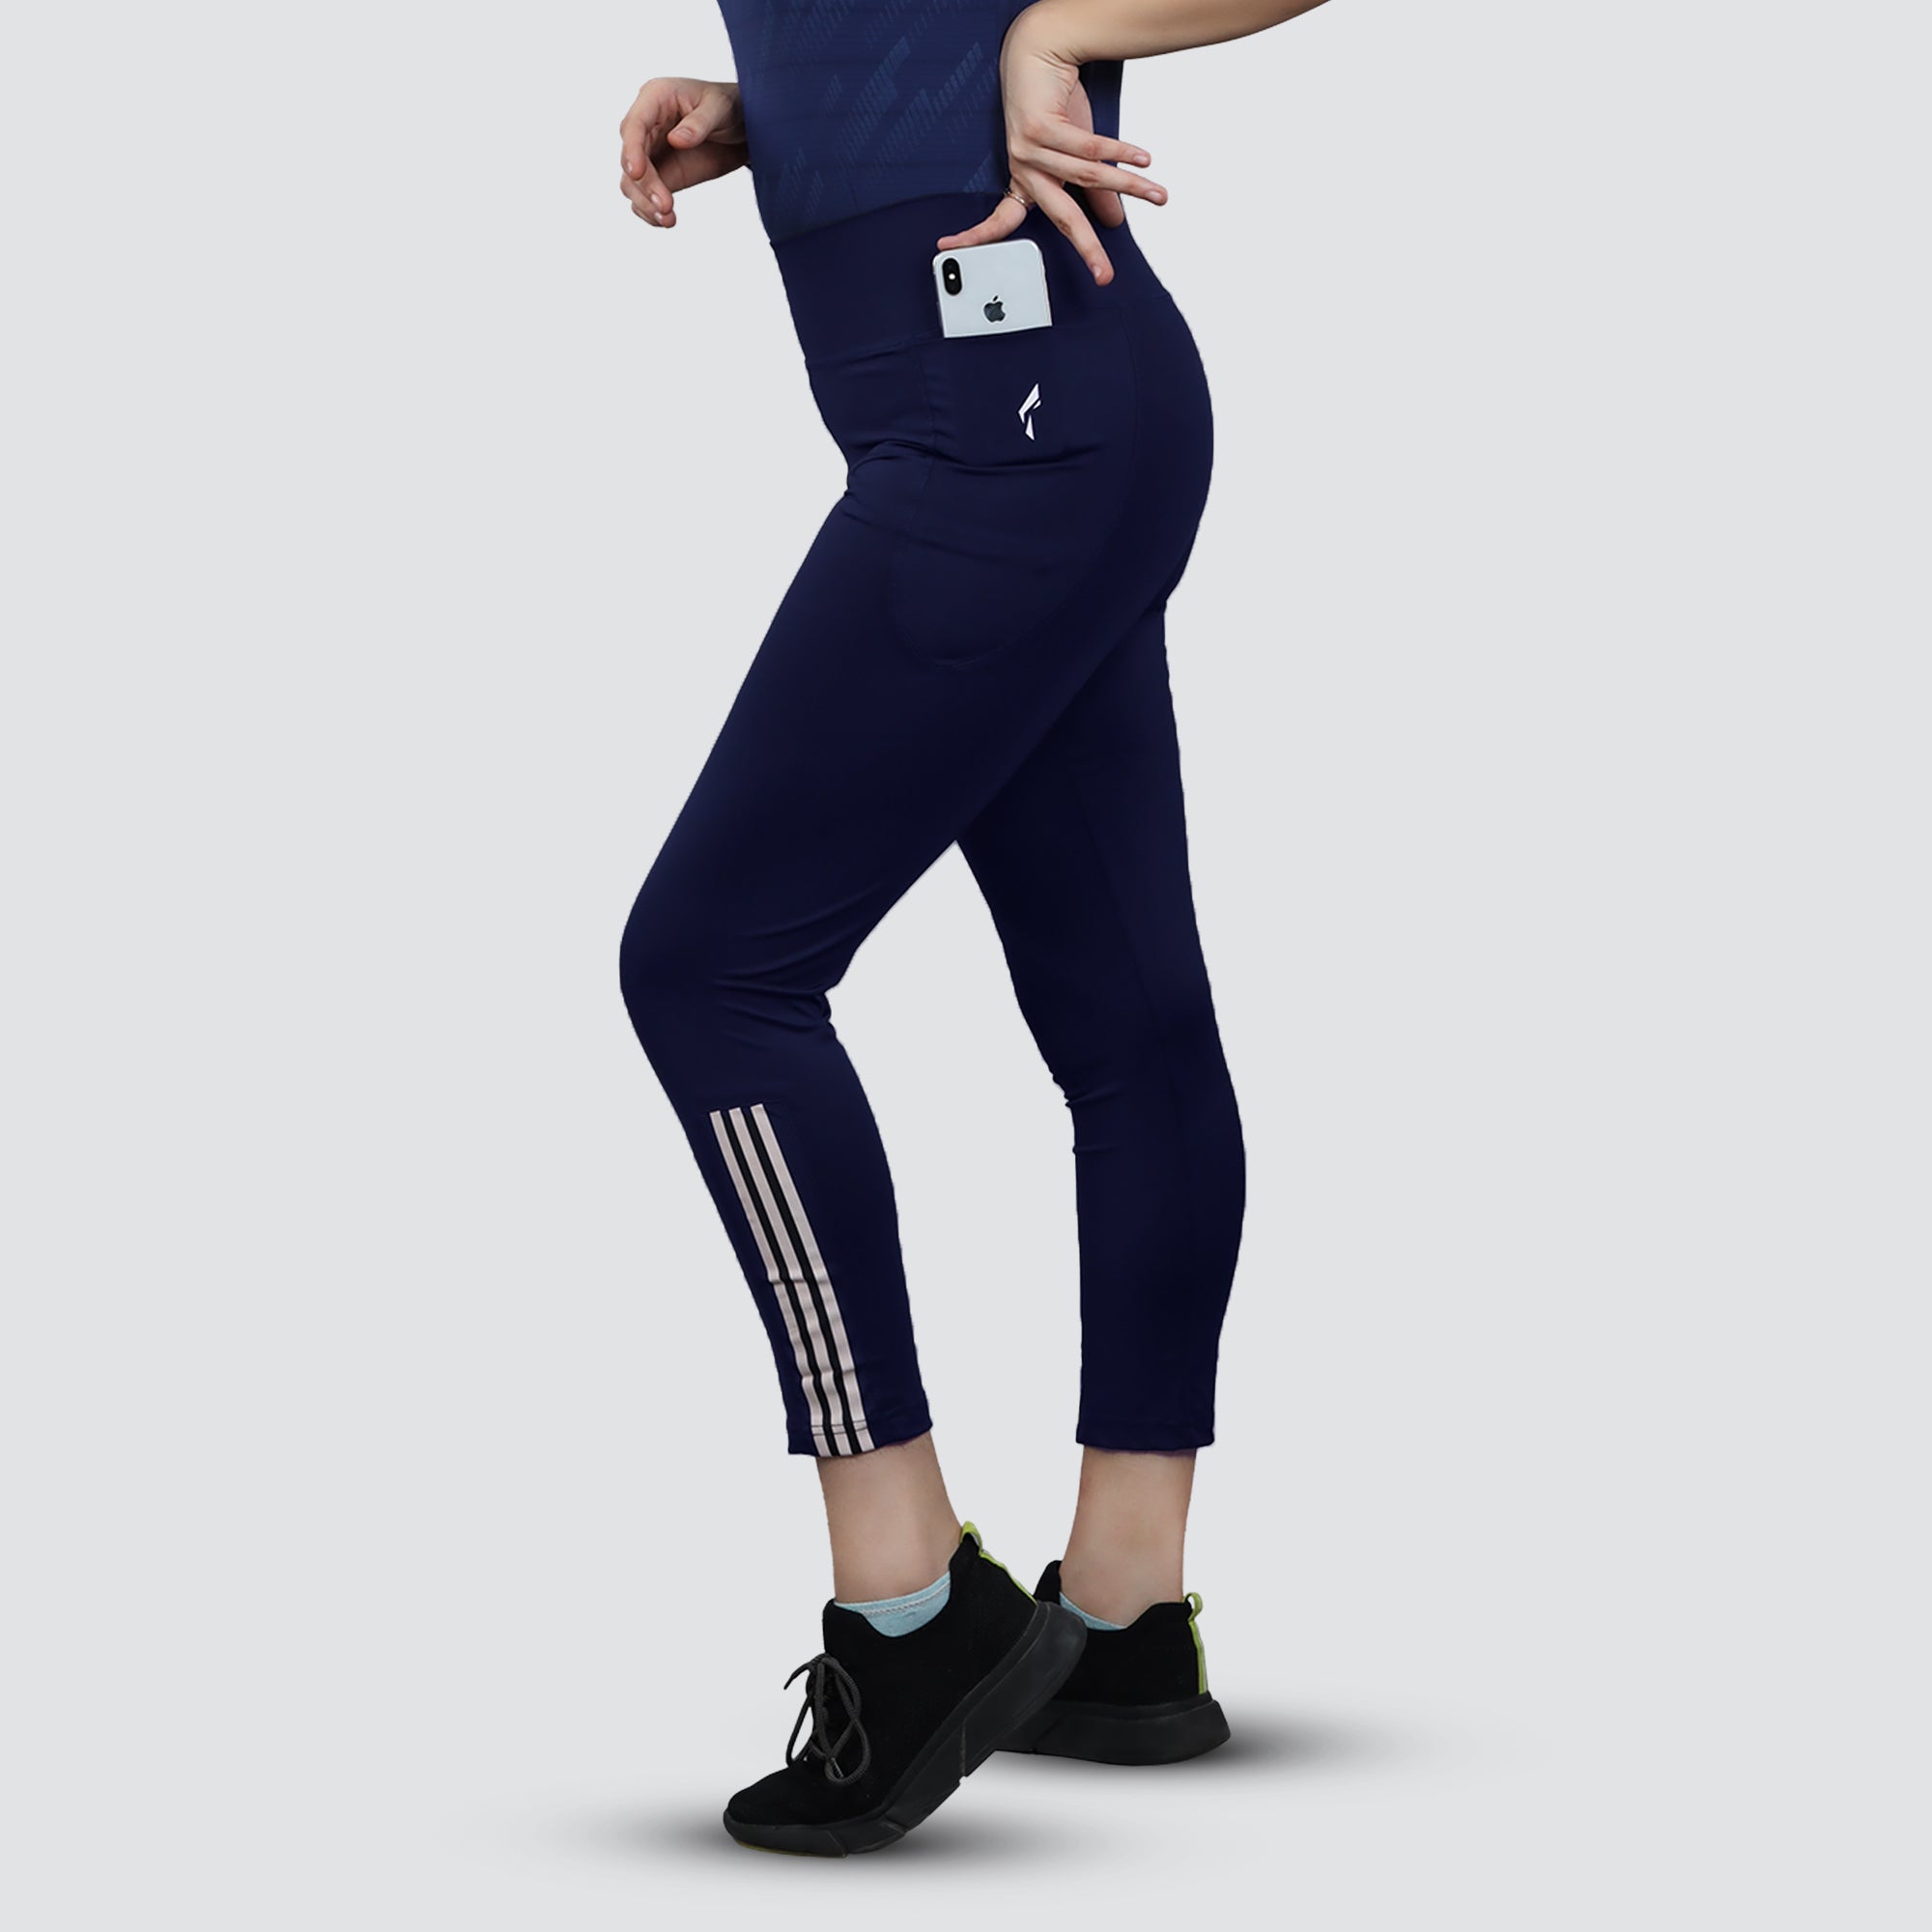 بنطال يوغا رياضي، للركض و للتمارين الرياضية  للنساء - أزرق داكن